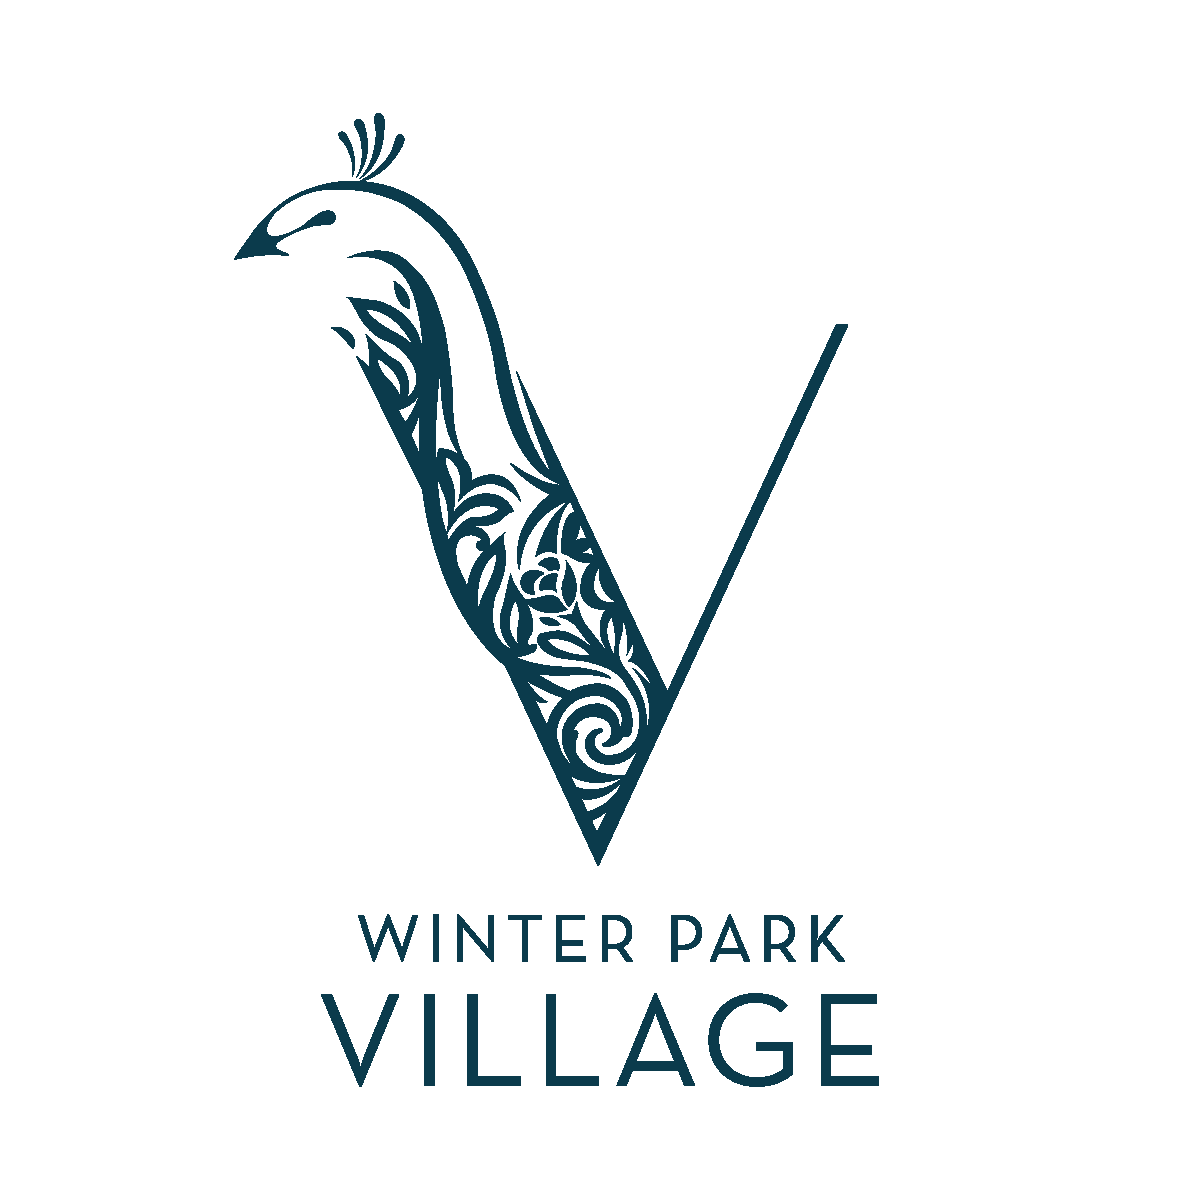 Winter Park Village